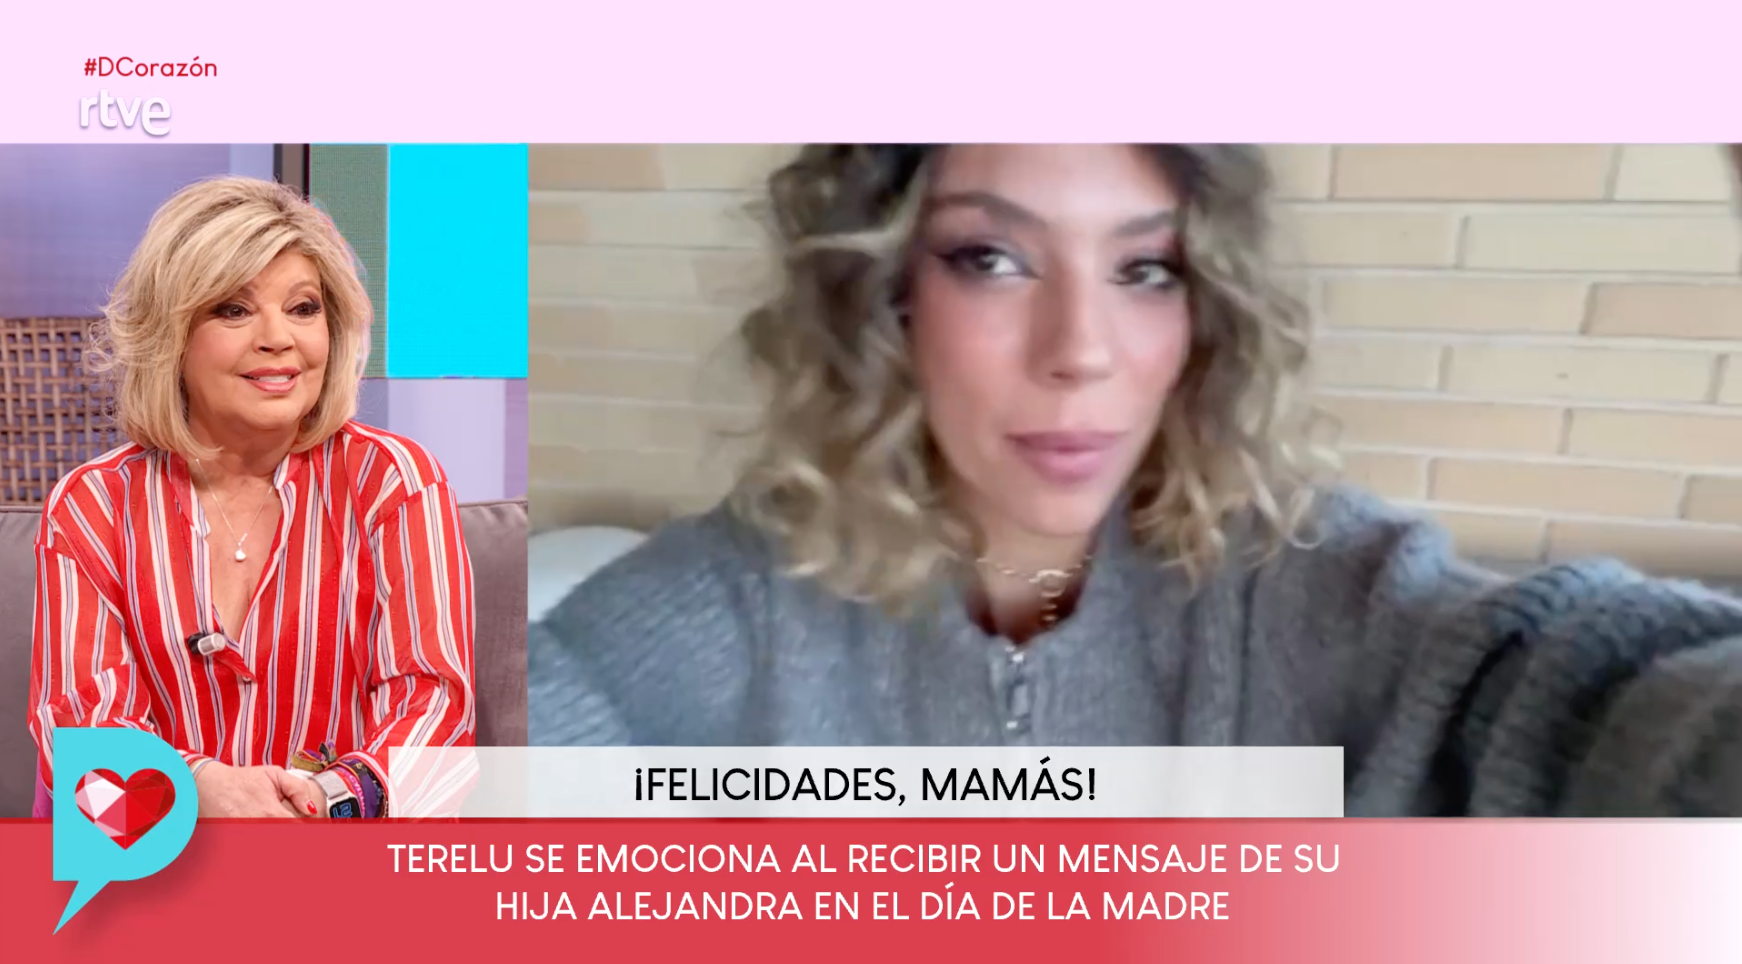 Terelu Campos emocionada por el vídeo de su hija en el Día de la Madre en 'DCorazón'